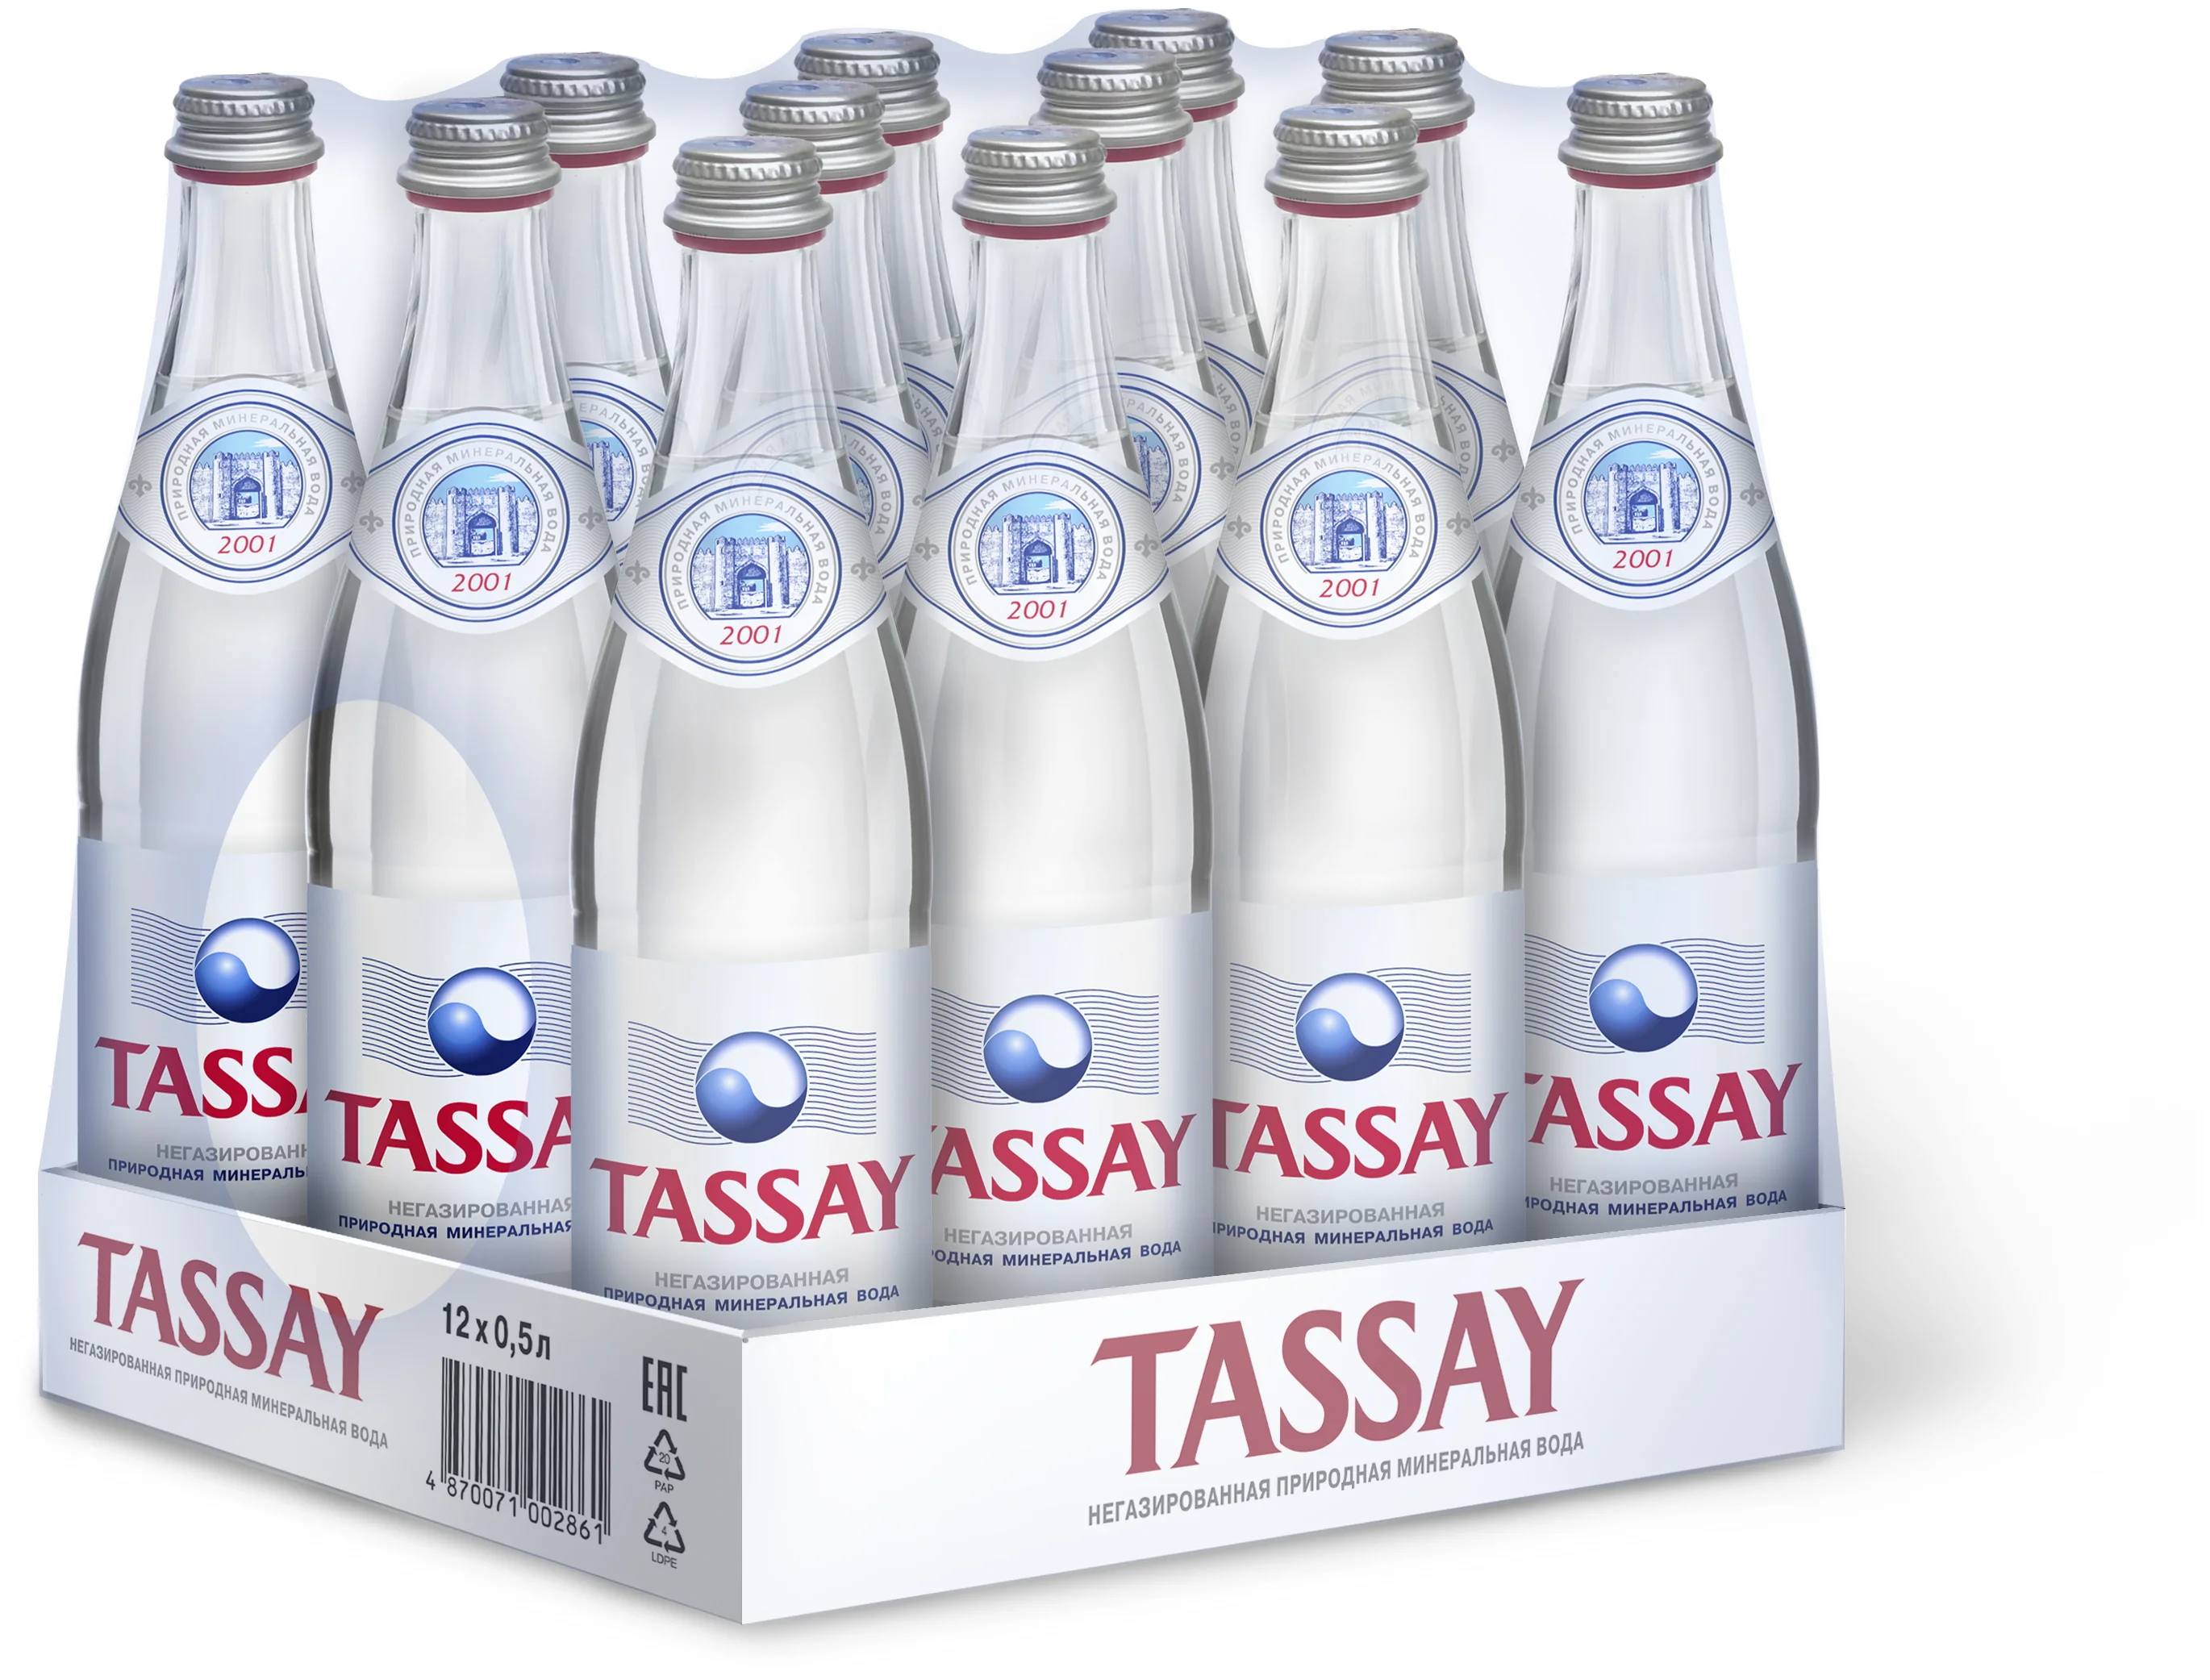 Питьевая вода Tassay негазированная, стекло, 12 шт. по 0.5 л